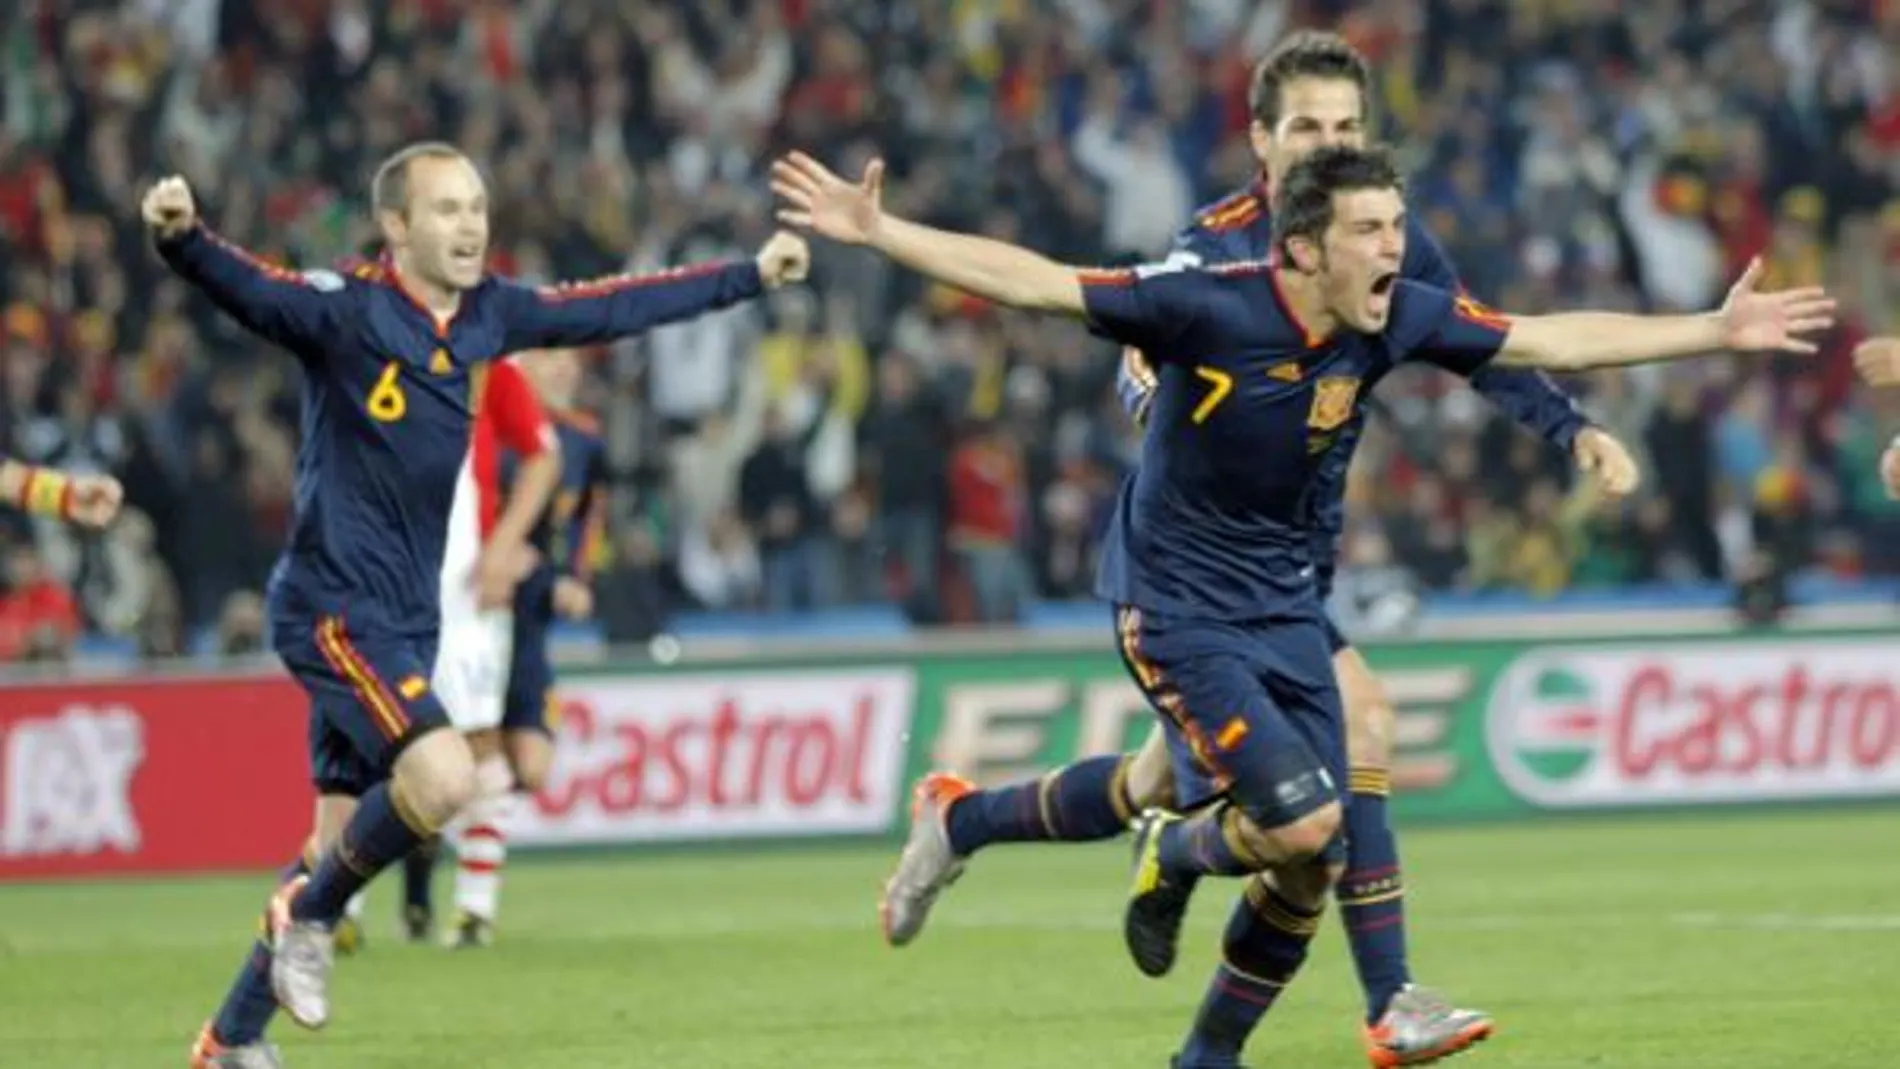 España, por fin, en semifinales de un Mundial tras derrotar a Paraguay